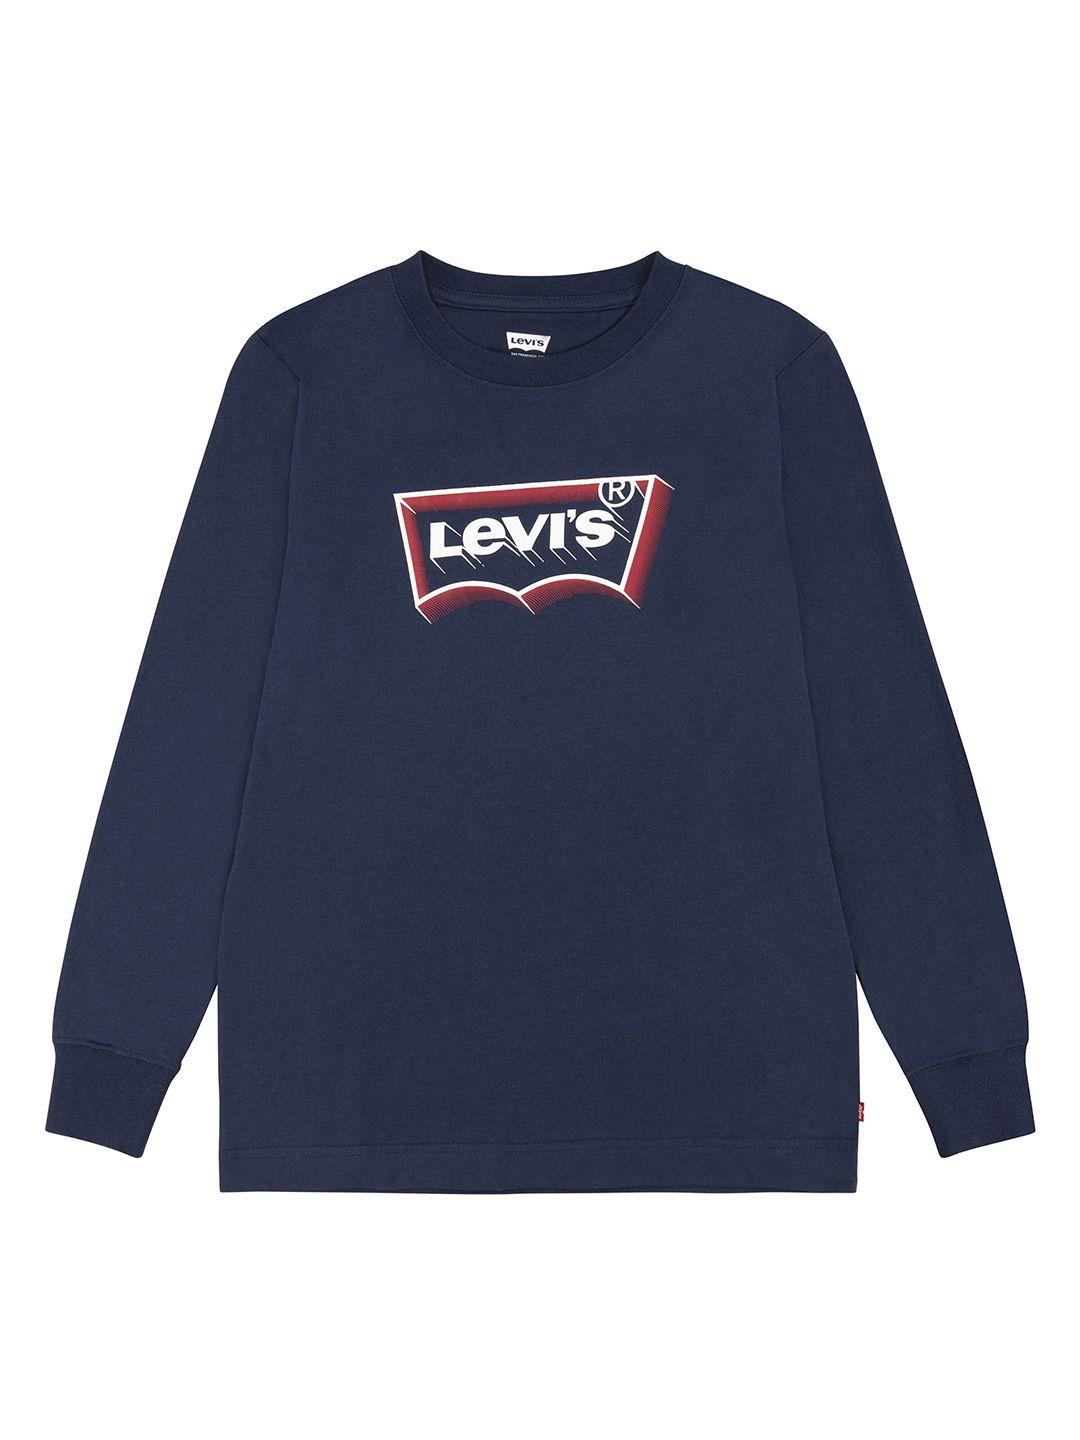 levis-boys-blue-printed-organic-cotton-applique-t-shirt